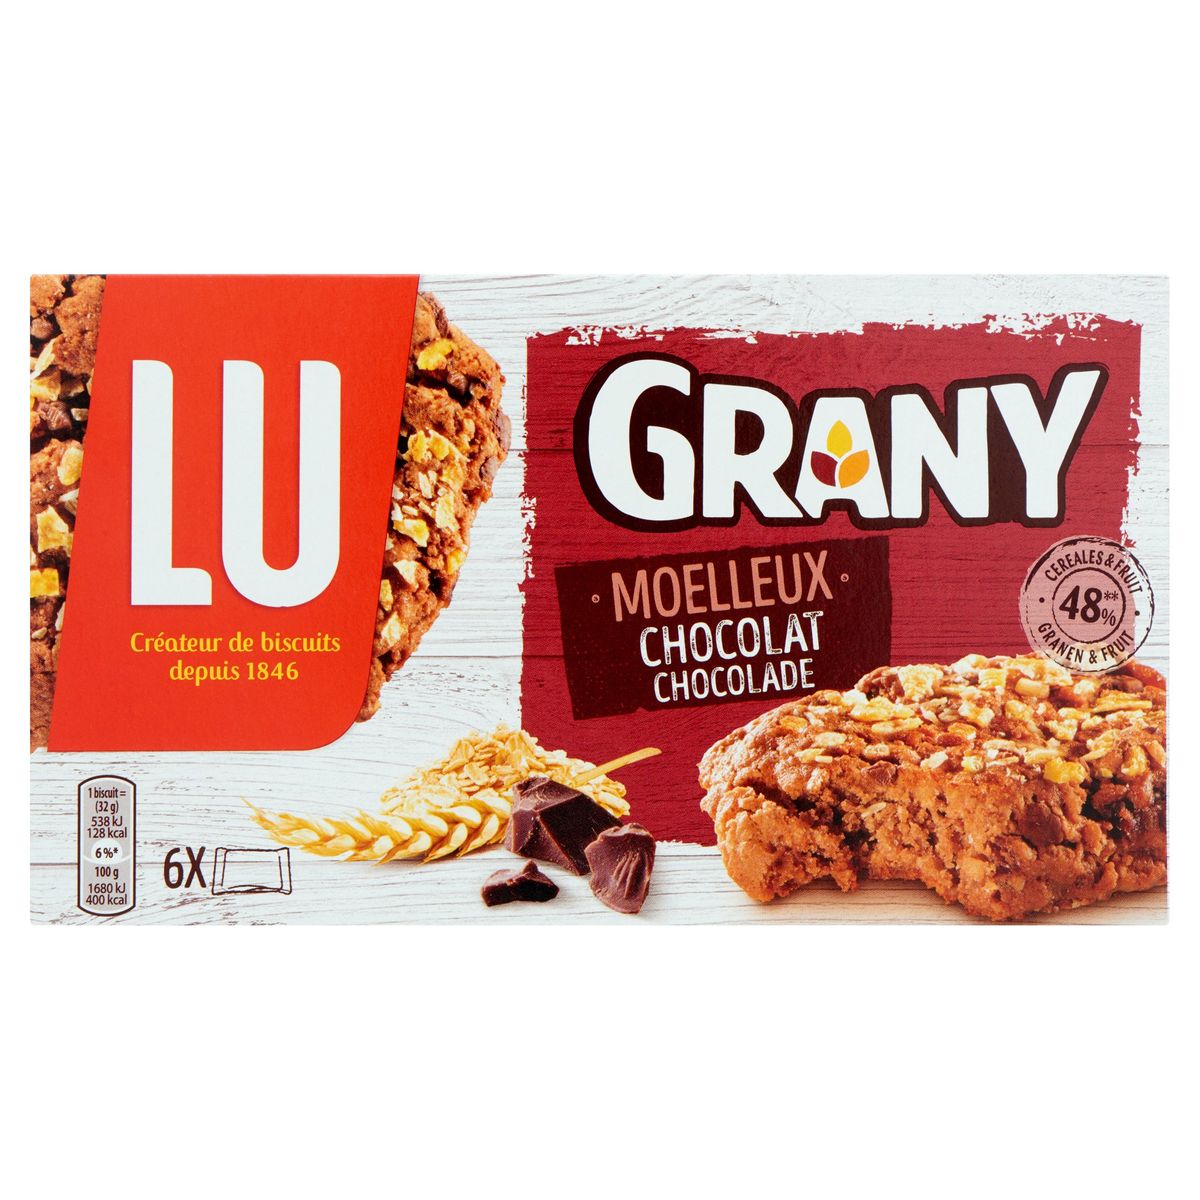 LU Grany Zachte Koeken Granen & Chocolade 192g